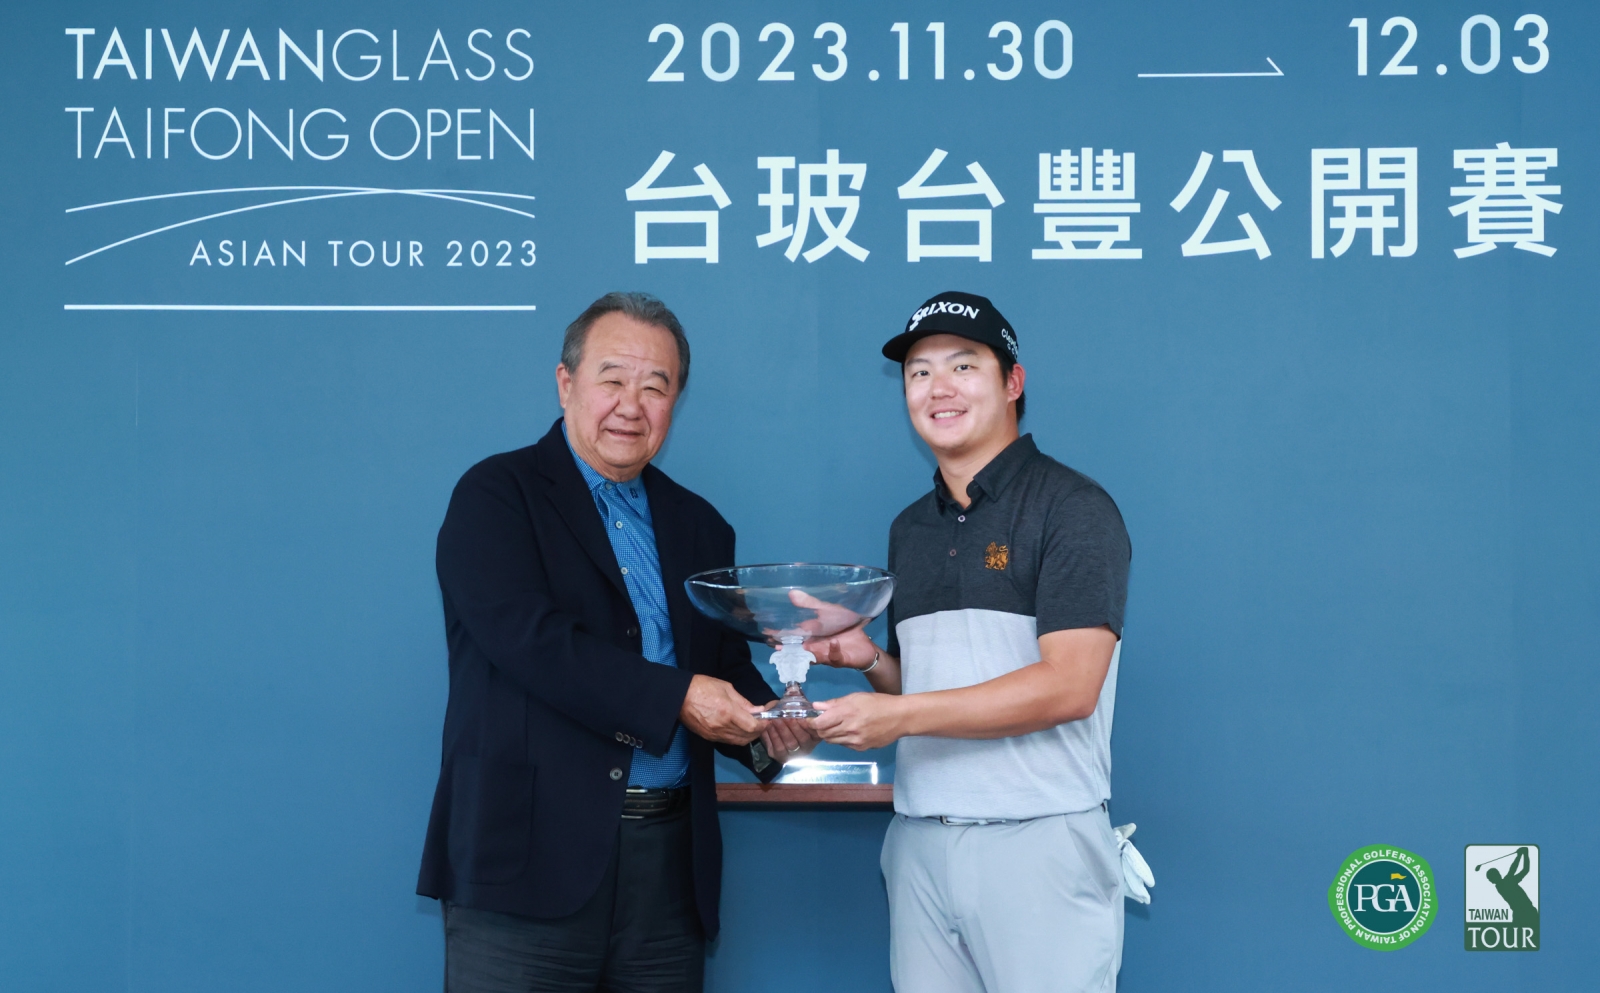 台豐高爾夫俱樂部董事長林伯實(左)頒冠軍盃給泰國選手蘇提帕(鍾豐榮攝影)